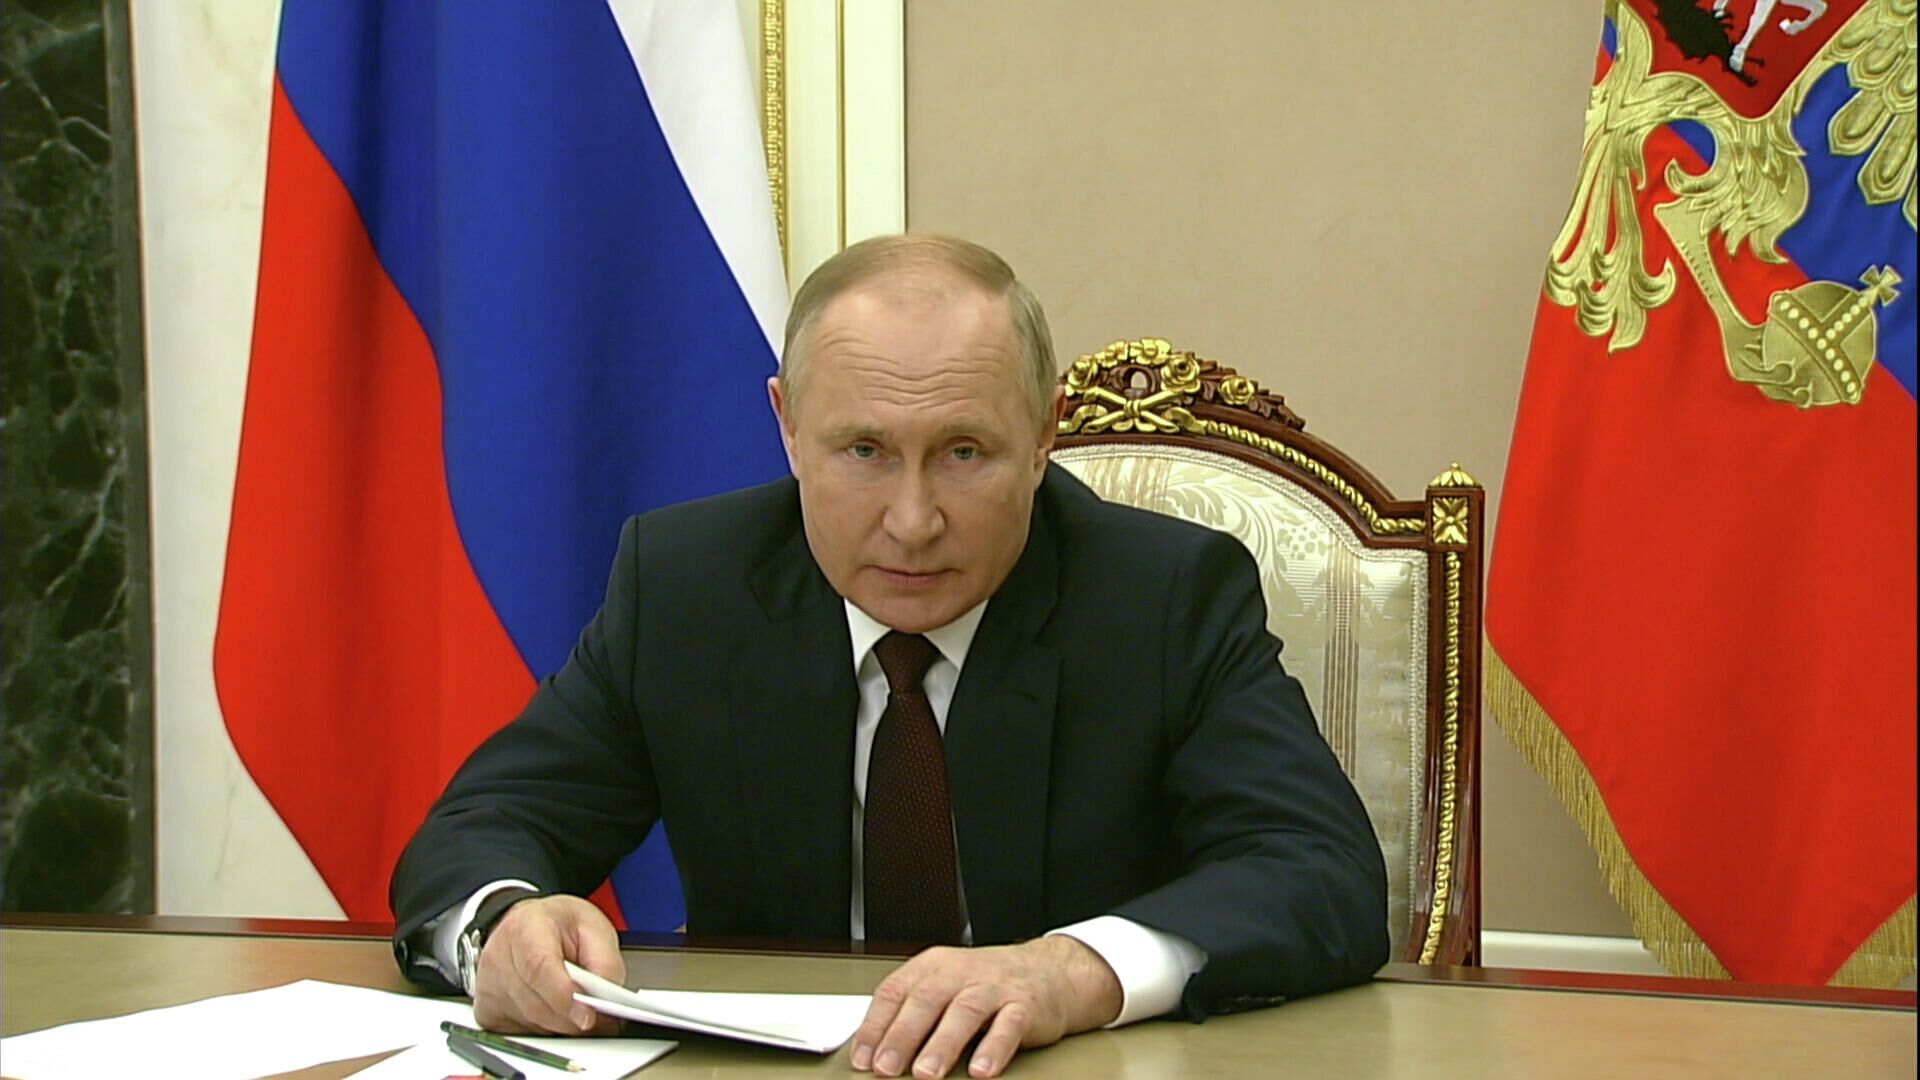 Путин: Предлагаю на 2022 год установить более высокую планку прожиточного минимума - РИА Новости, 1920, 18.11.2021